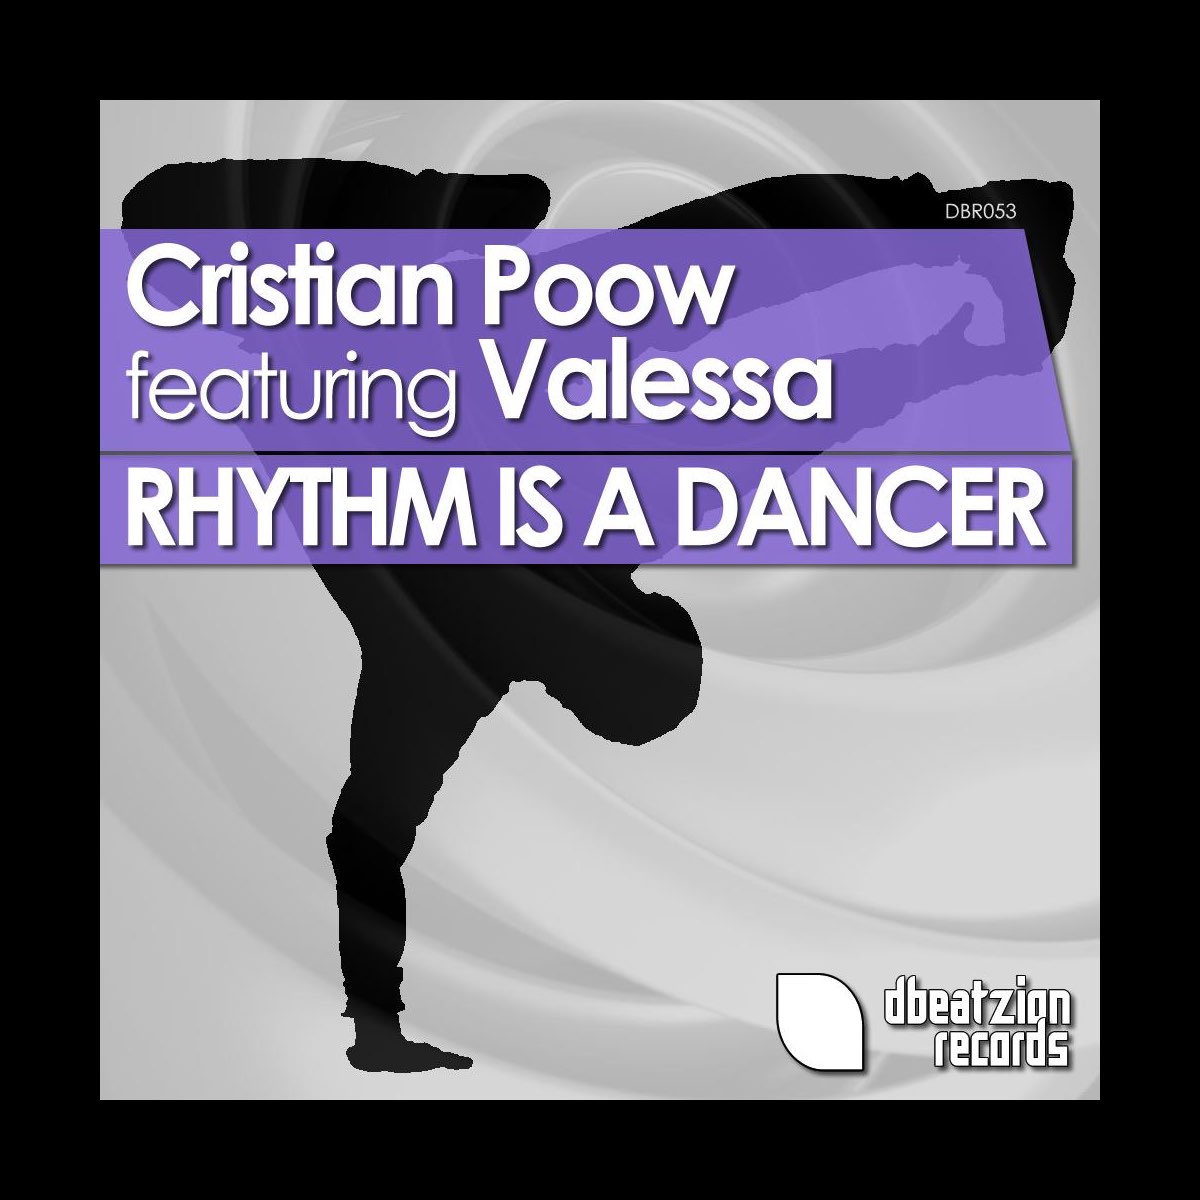 Rhythm is a dancer mp3. Cristian Poow. Rhythm Dancer. Rhythm is a Dancer. Rhythm is a Dancer кроссовки.